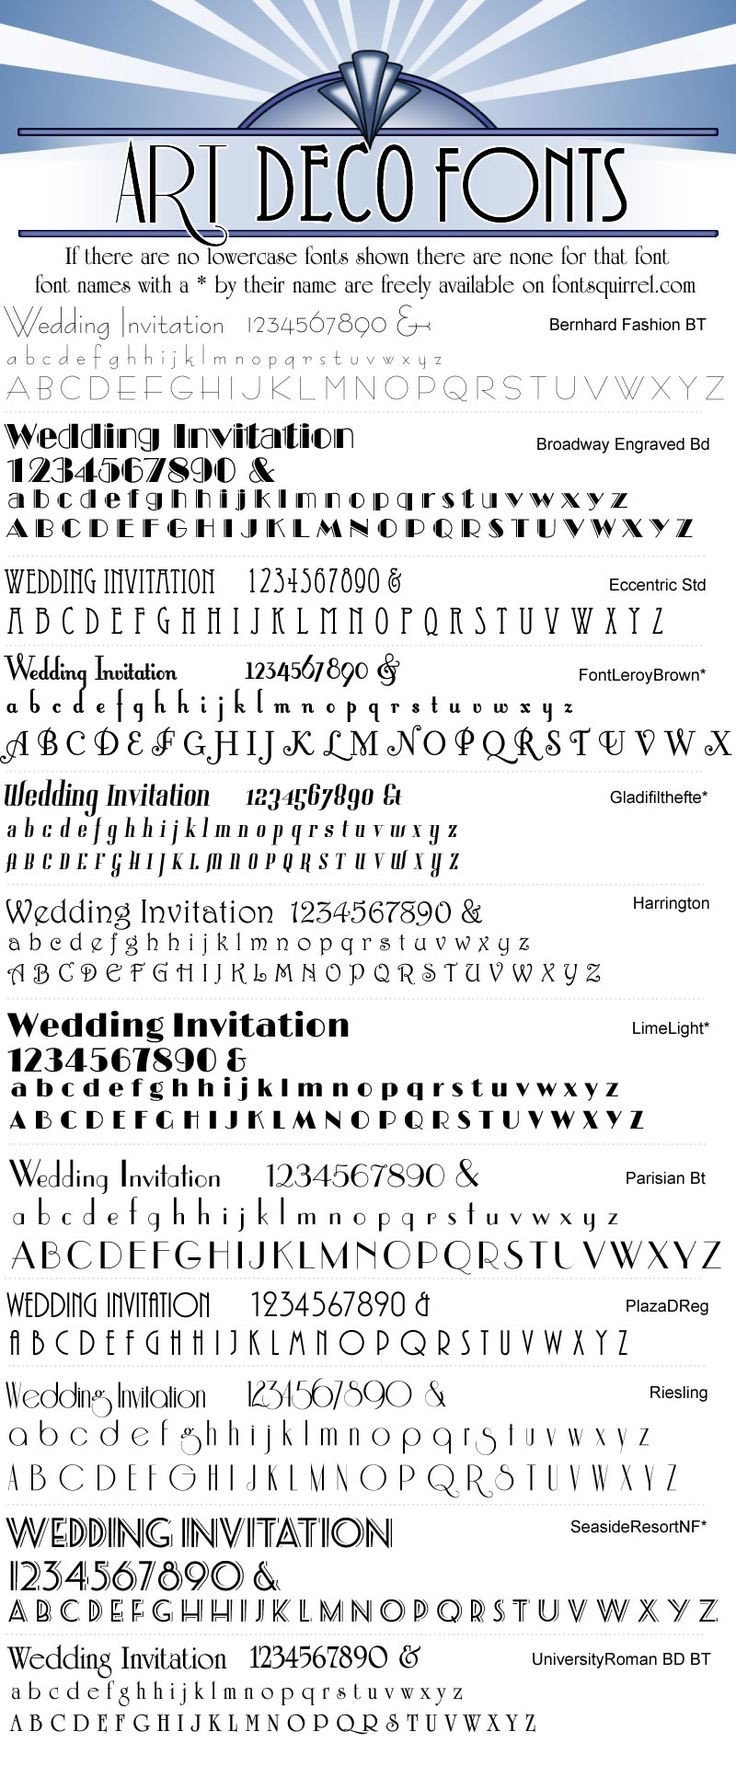 25 best ideas about Art deco font on Pinterest